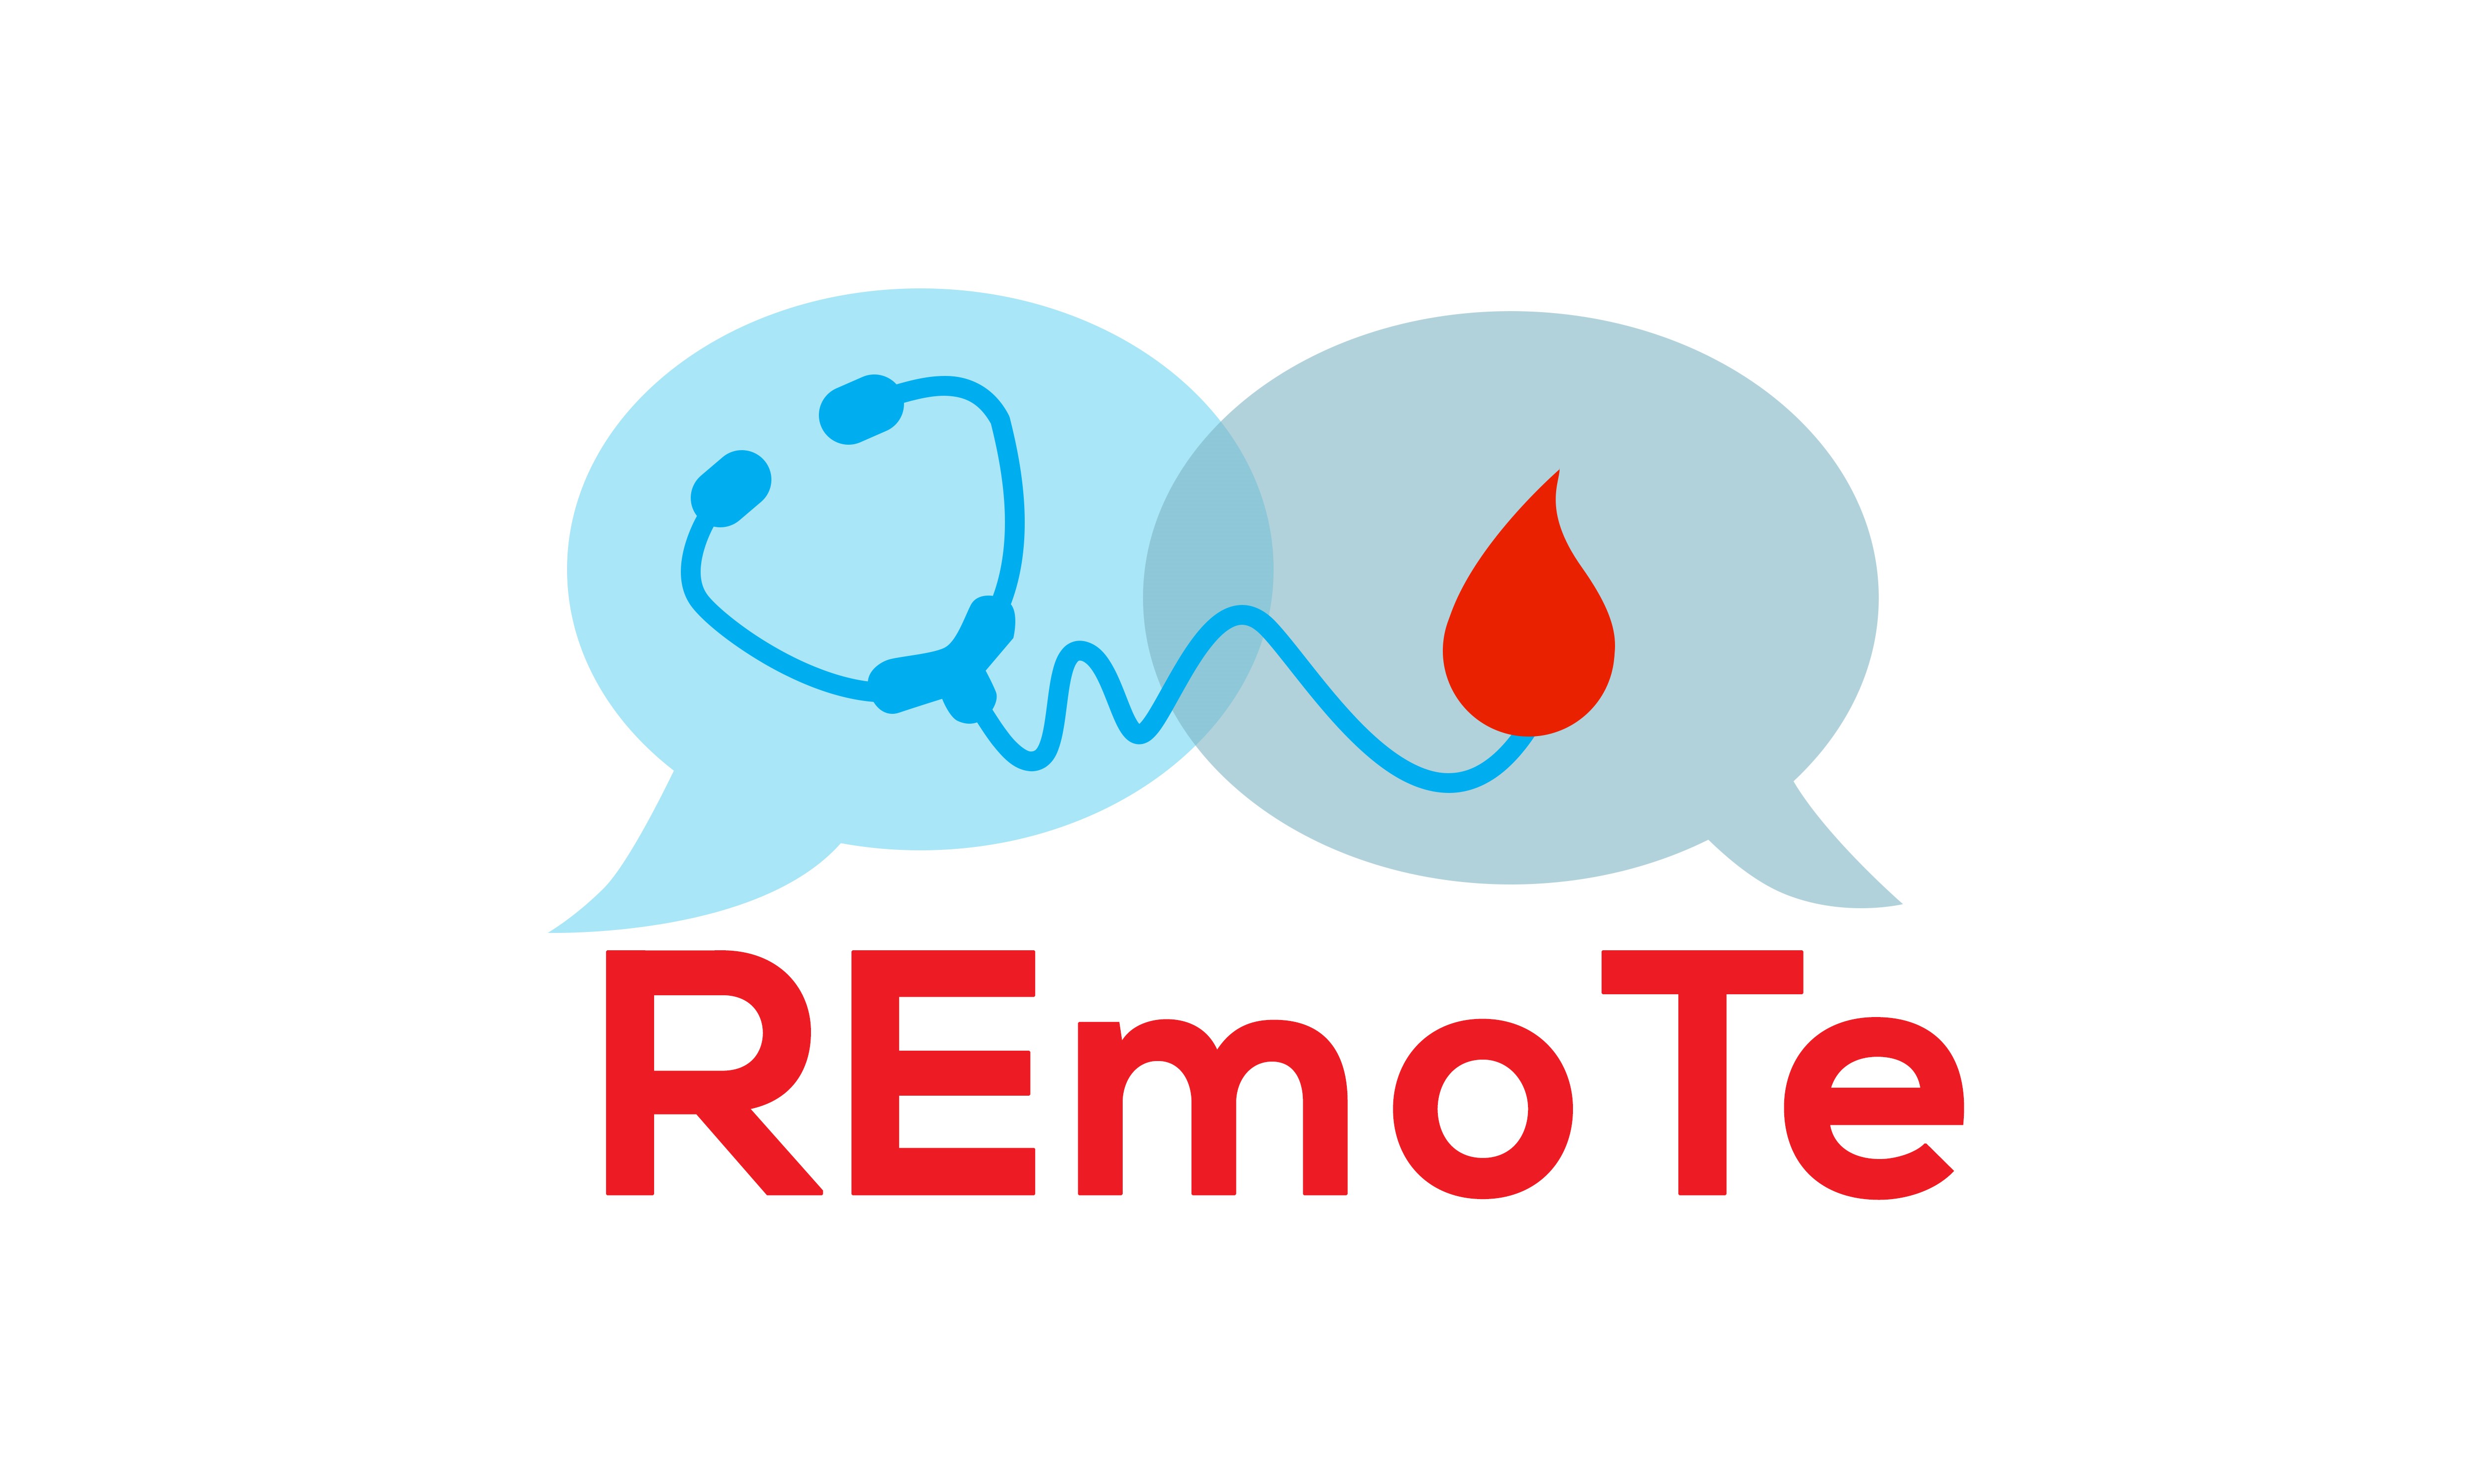 Nasce “Remote”, il progetto che porta i centri di emofilia a casa dei pazienti  